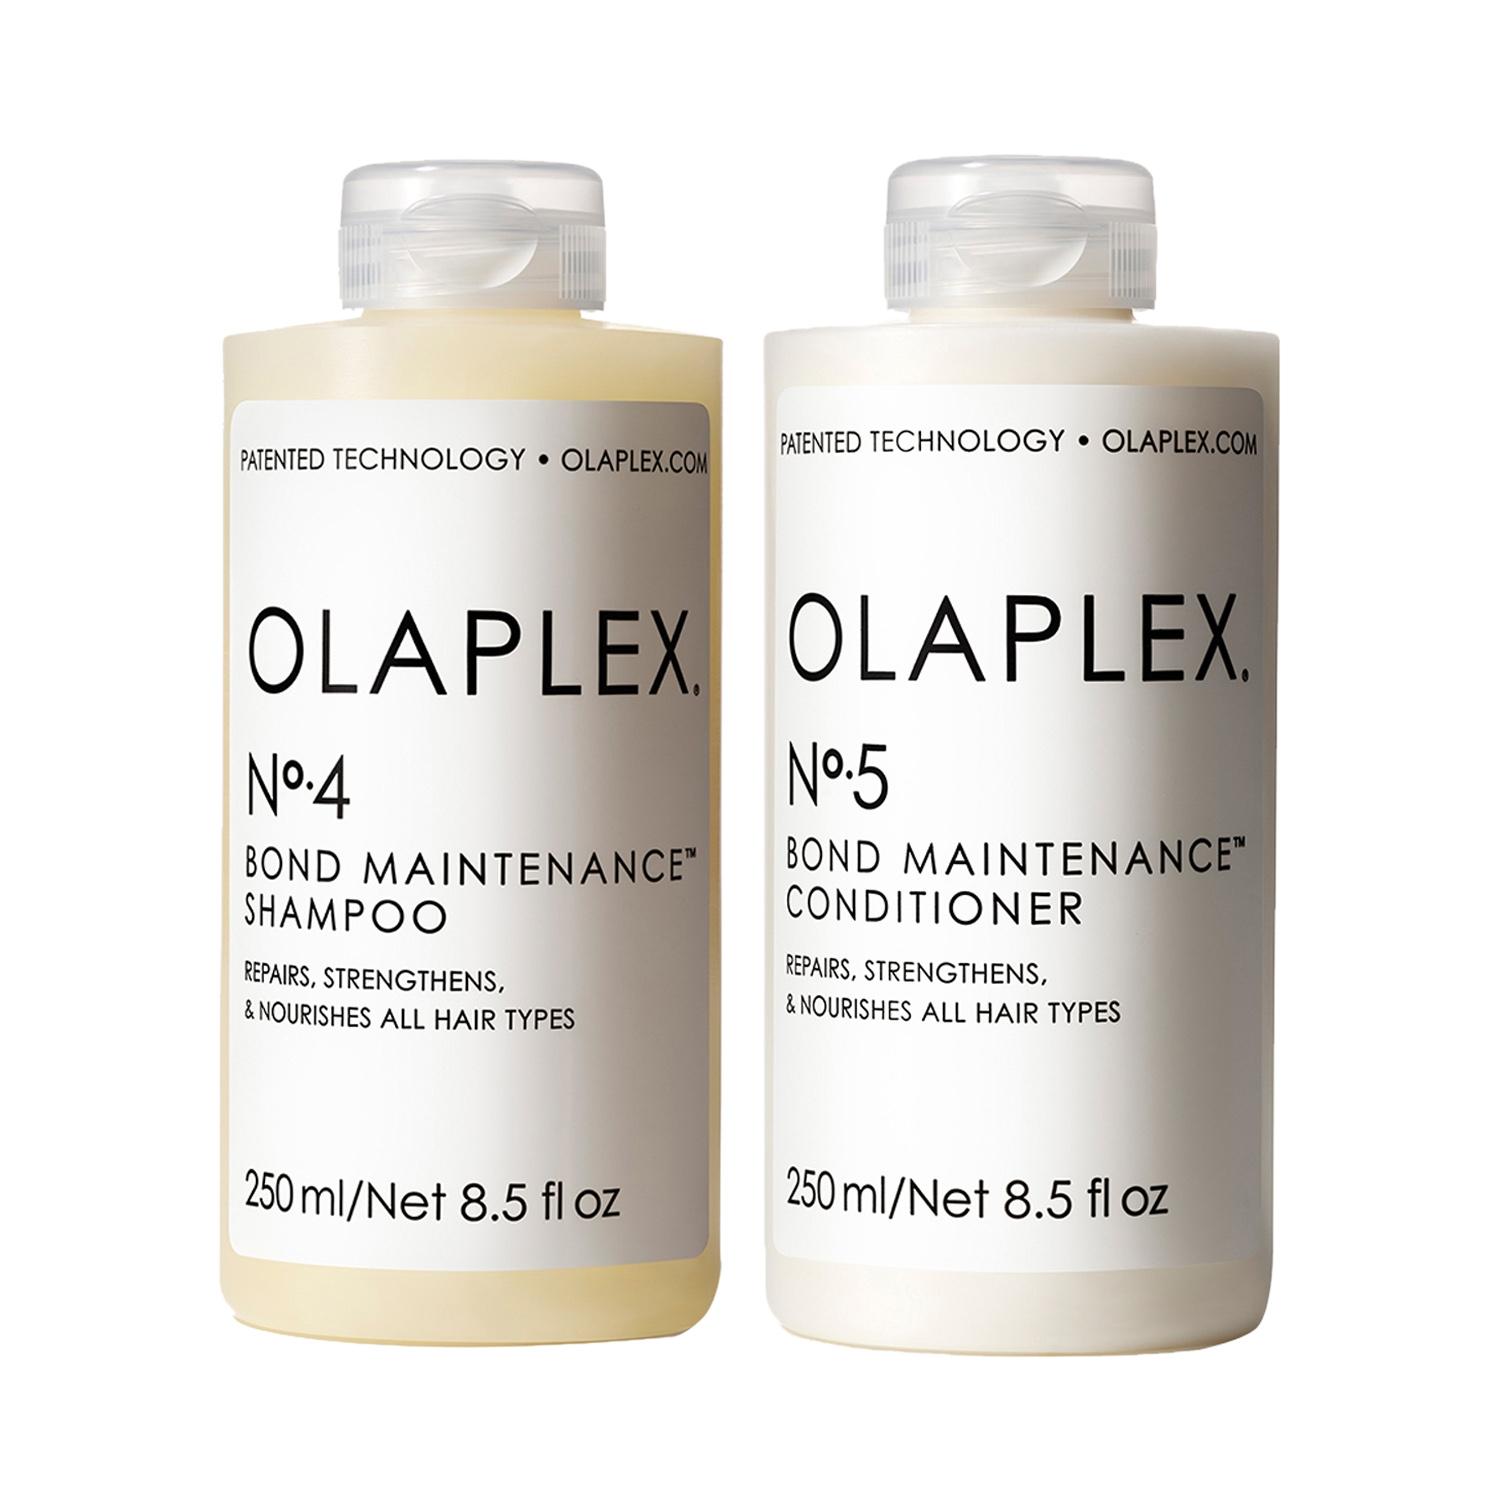 Olaplex | Olaplex Daily Cleanse & Condition Duo Combo